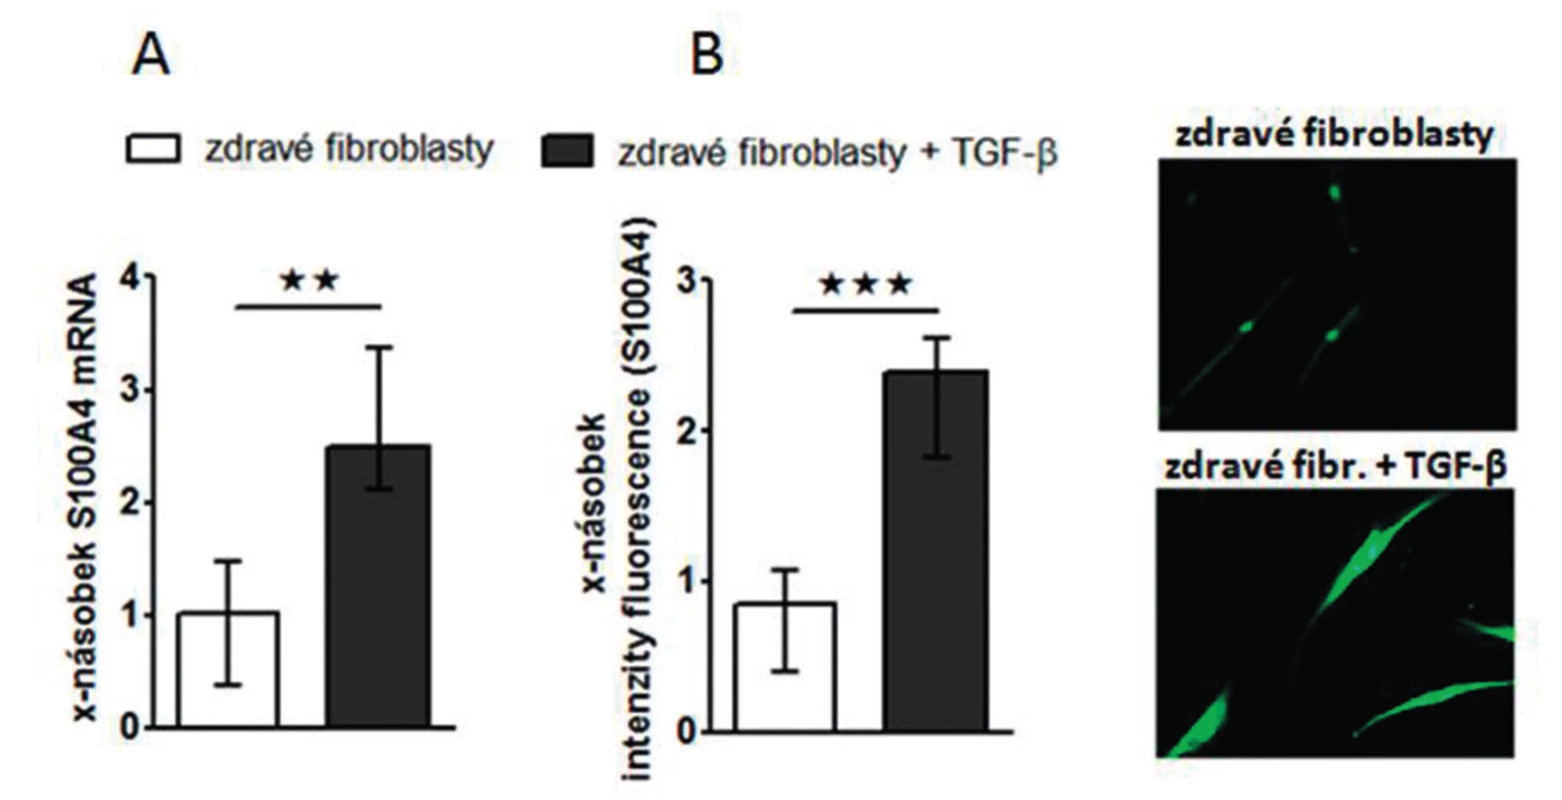 Exprese S100A4 je zvýšená ve zdravých fibroblastech stimulovaných TGF-ß